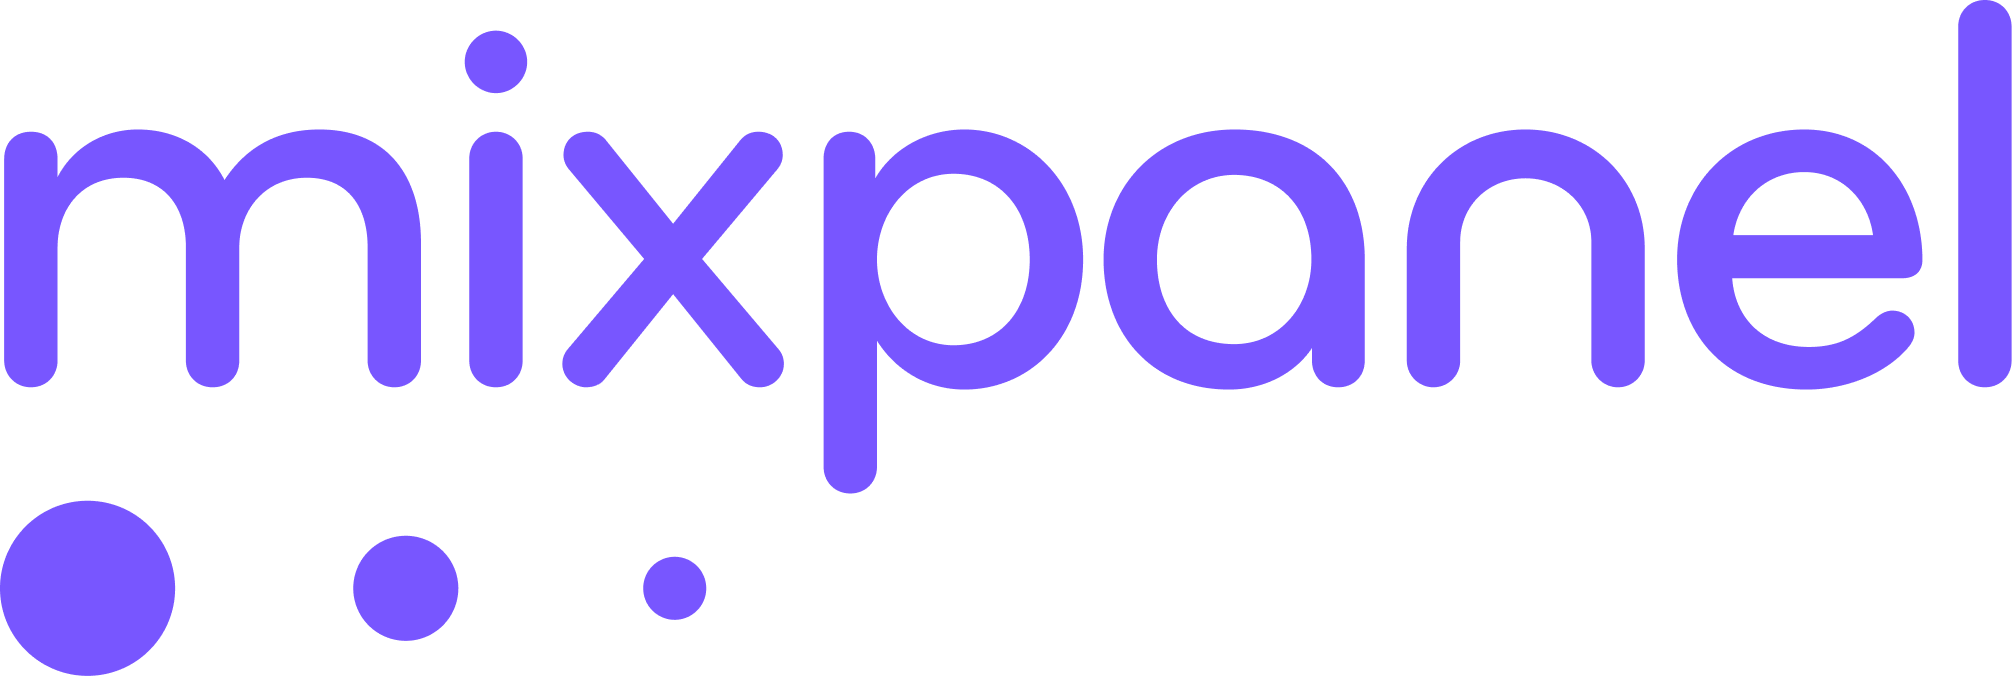 Mixpanel_full_logo_–_purple